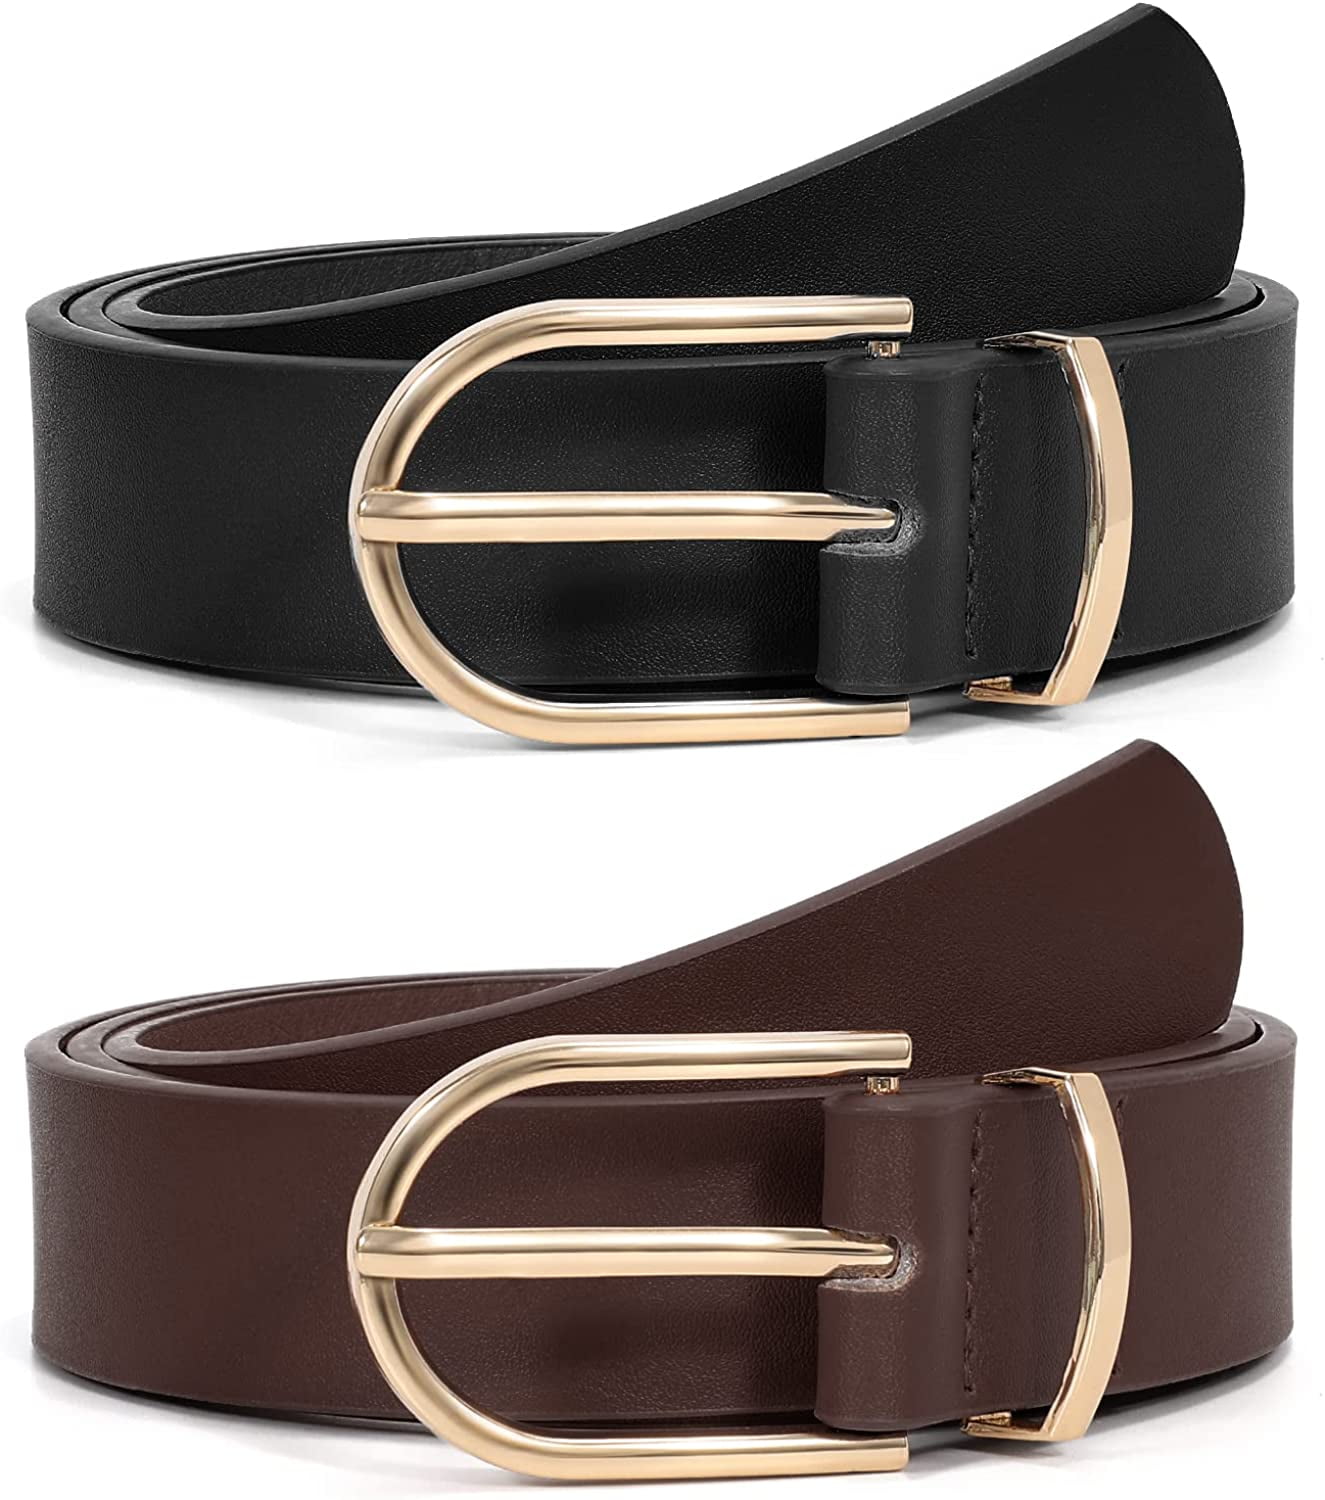 Buy TY belt Women Leather Belt Fashion Hook Designed Buckle Wide